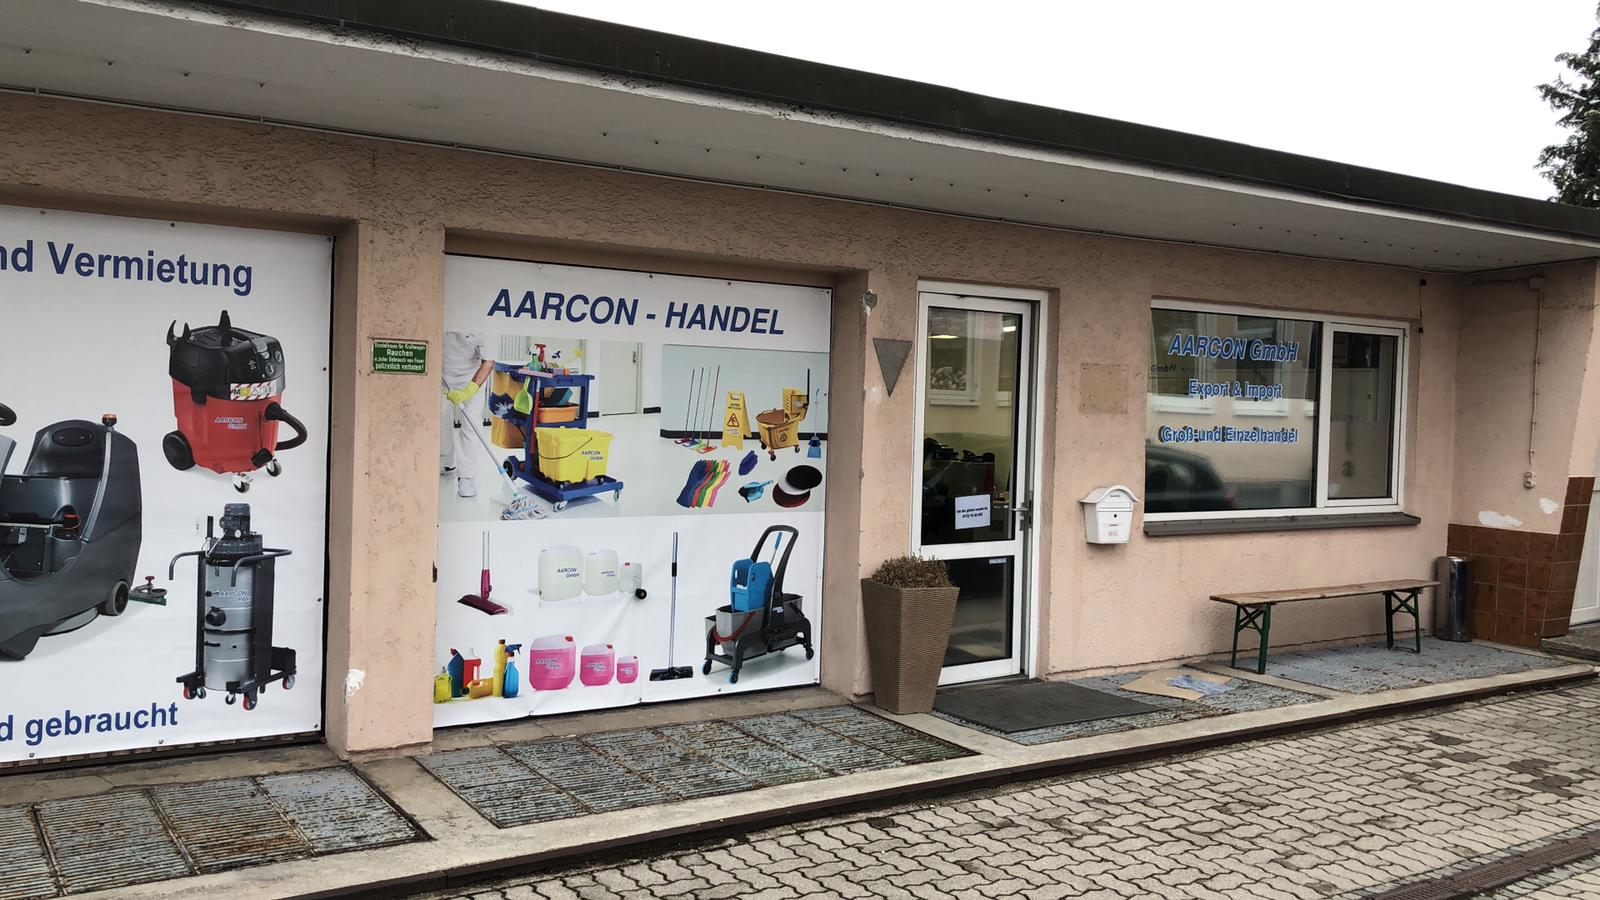 AARCON GmbH | Galerie